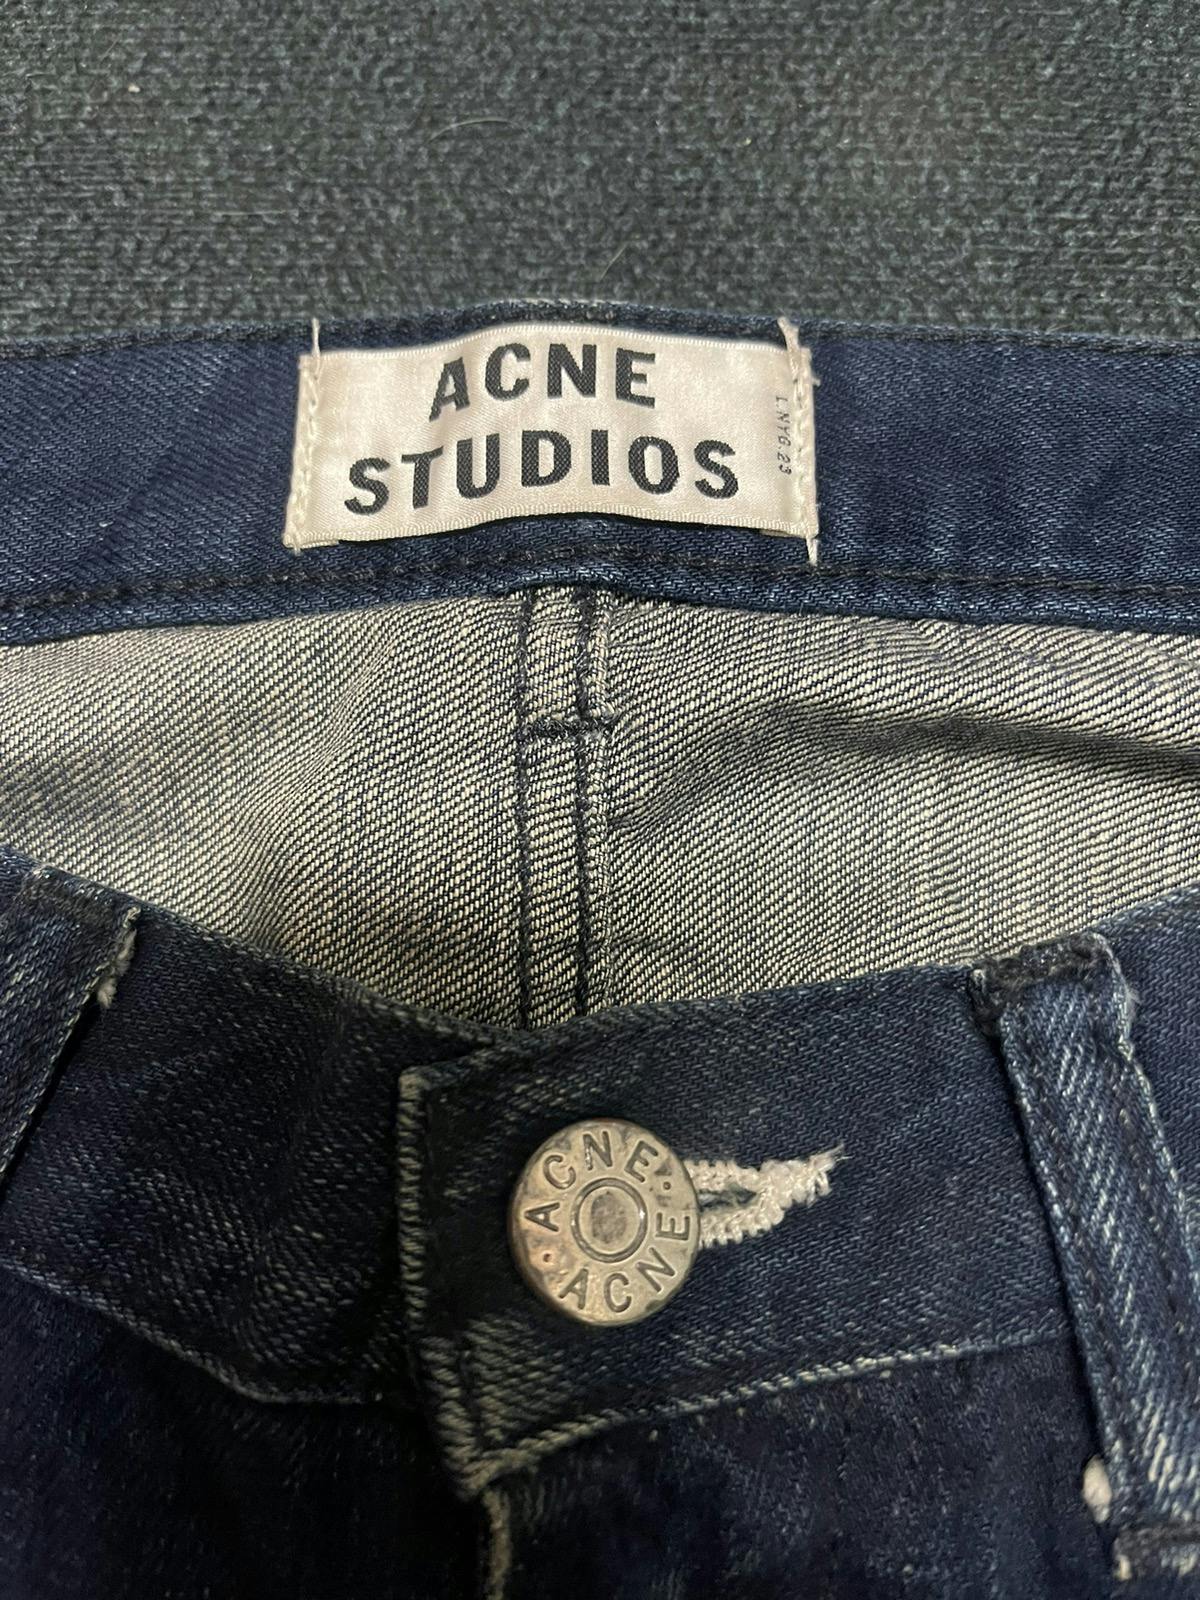 Acne studio jeans - 3